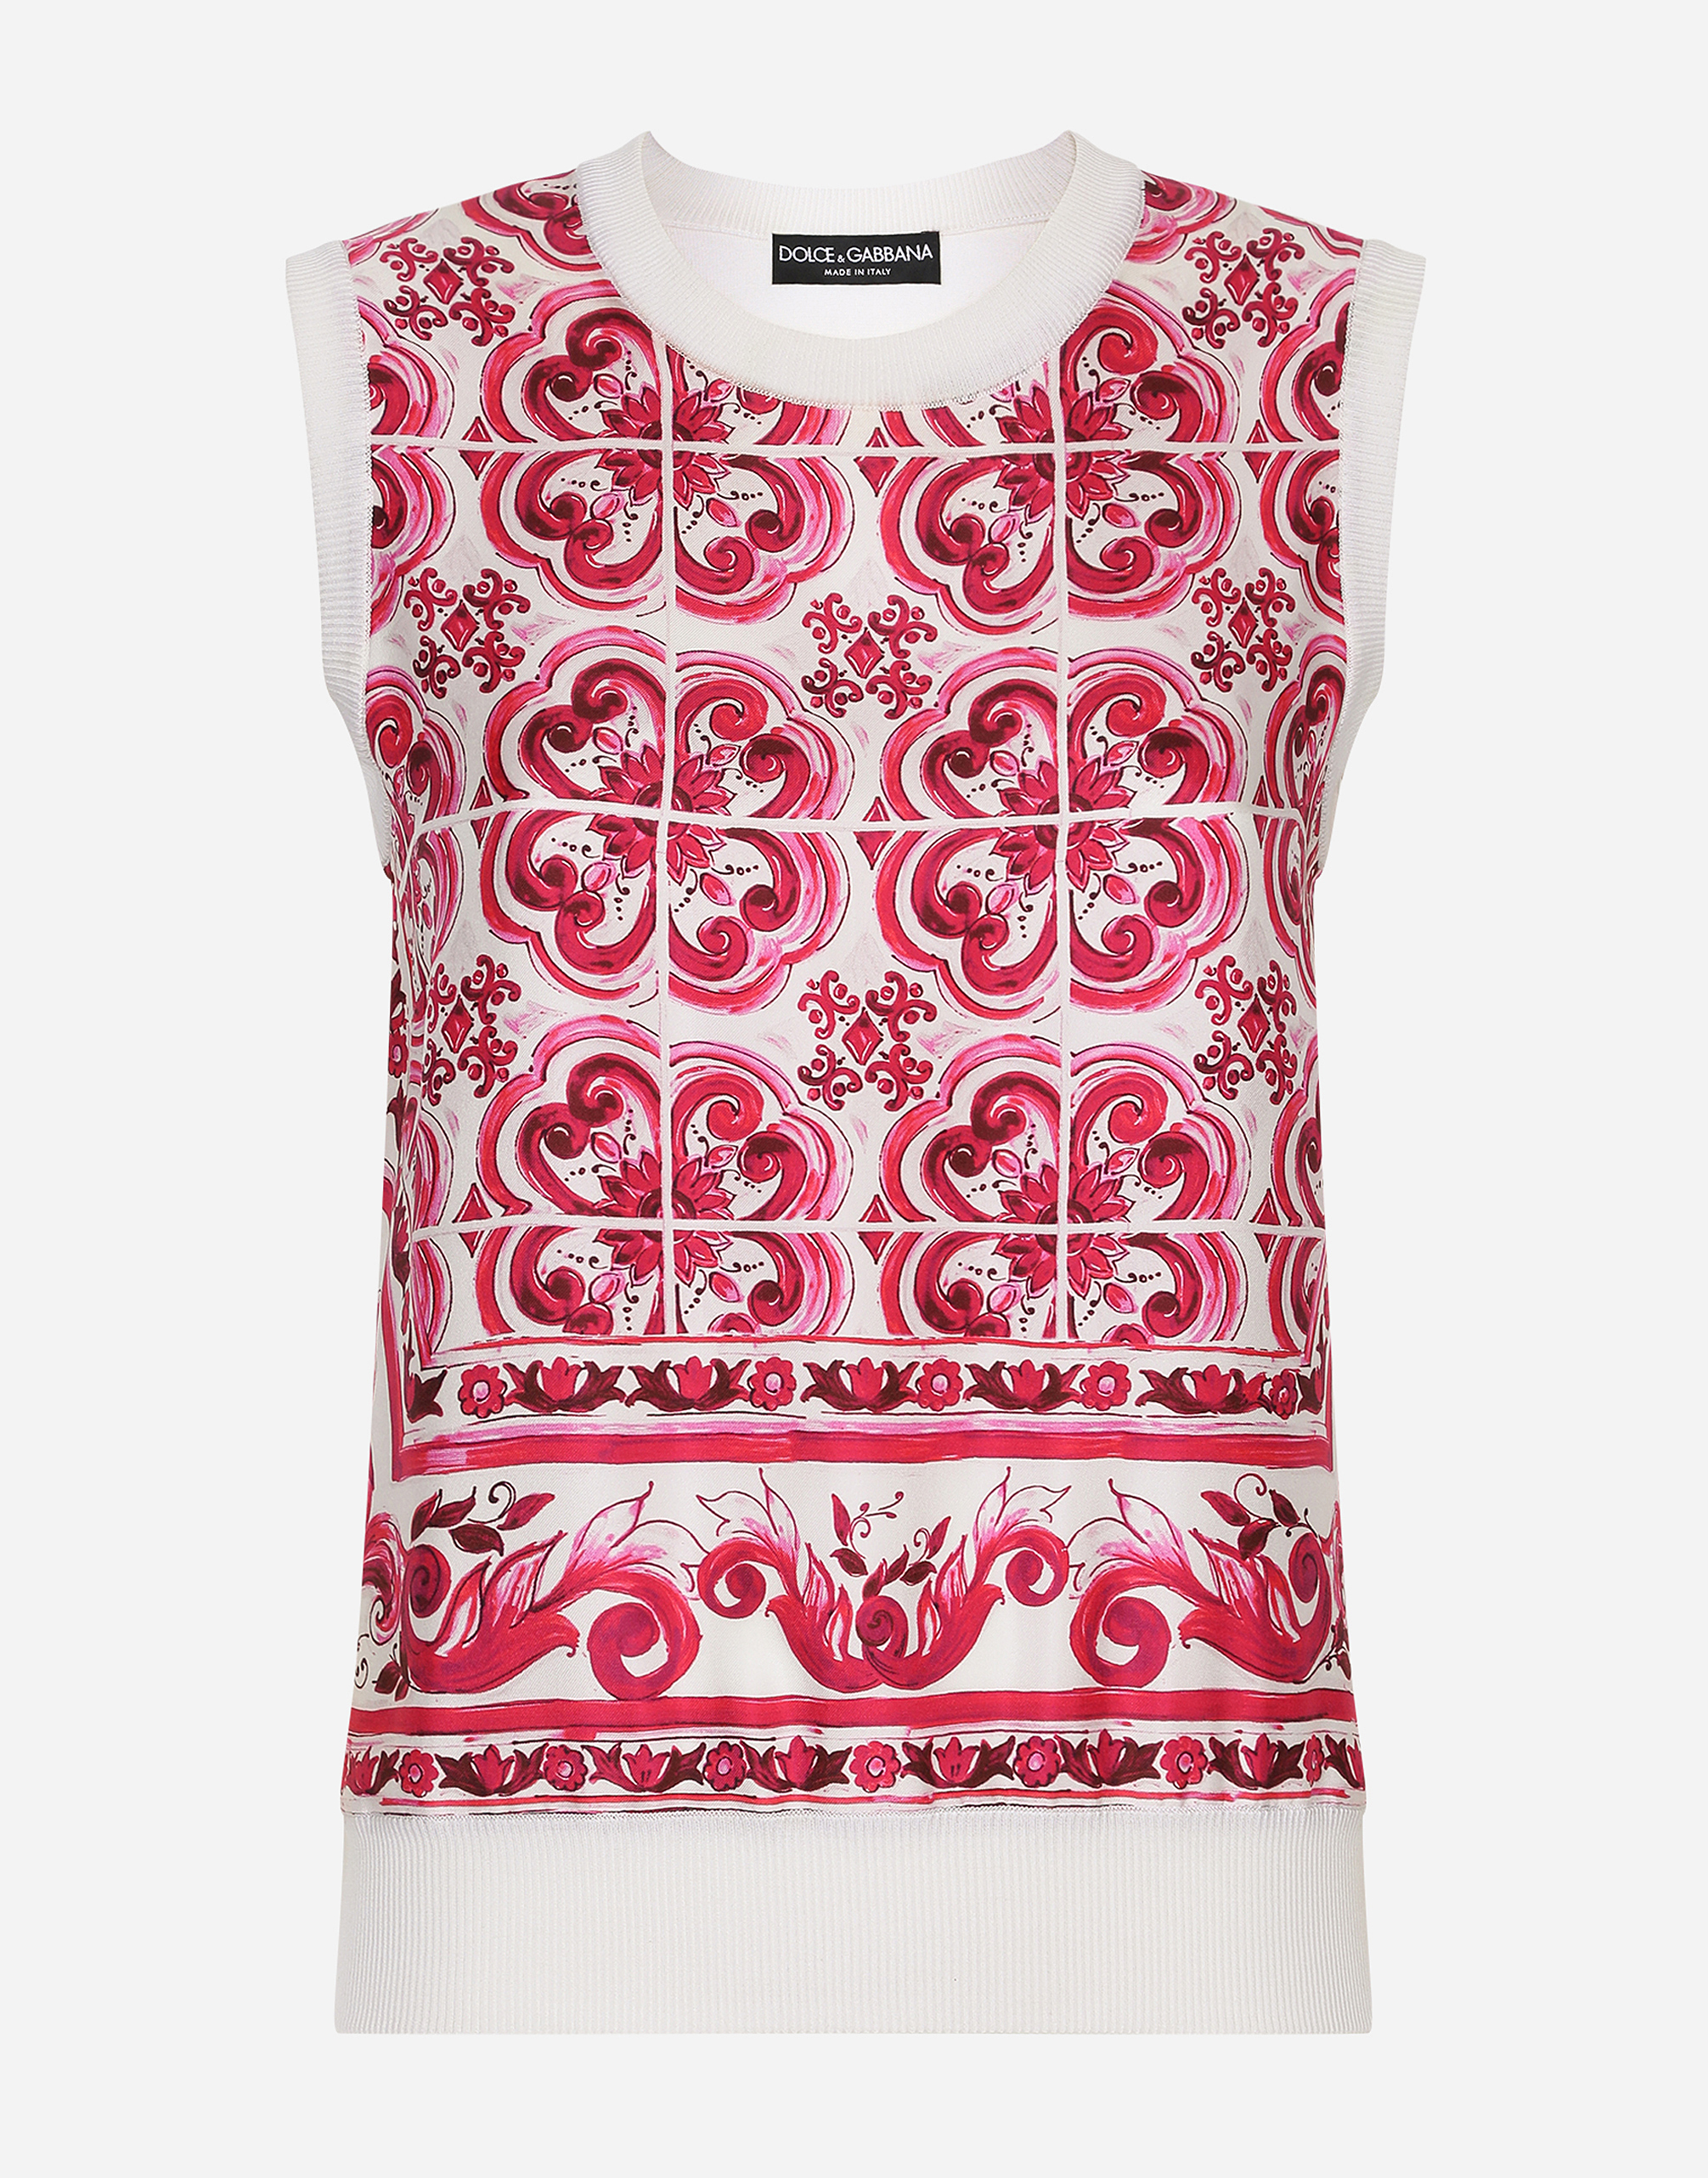 Dolce & Gabbana Silk And Twill Maiolica Print Jumper In Maiolica_3_fuxia